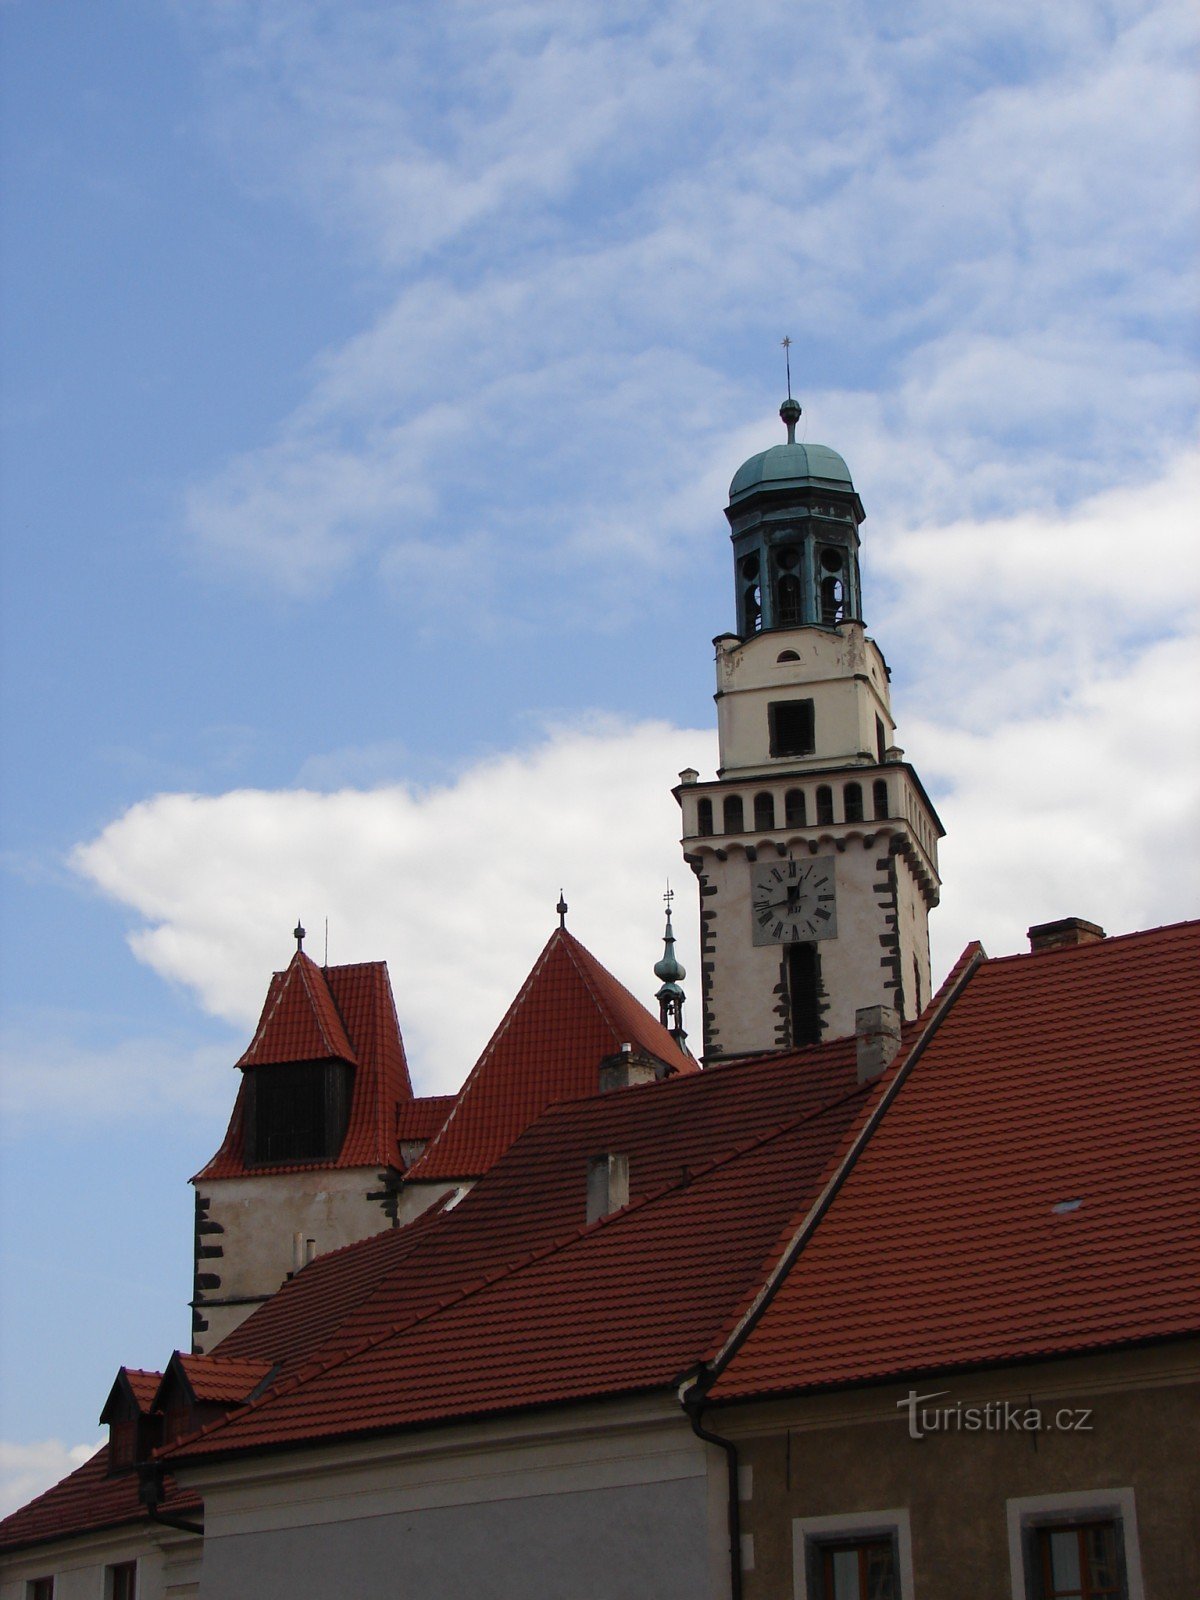 Besuchen Sie die Kirche St. Jakub in Prachatice, wo der Schutzpatron der Kaufleute und Pilger